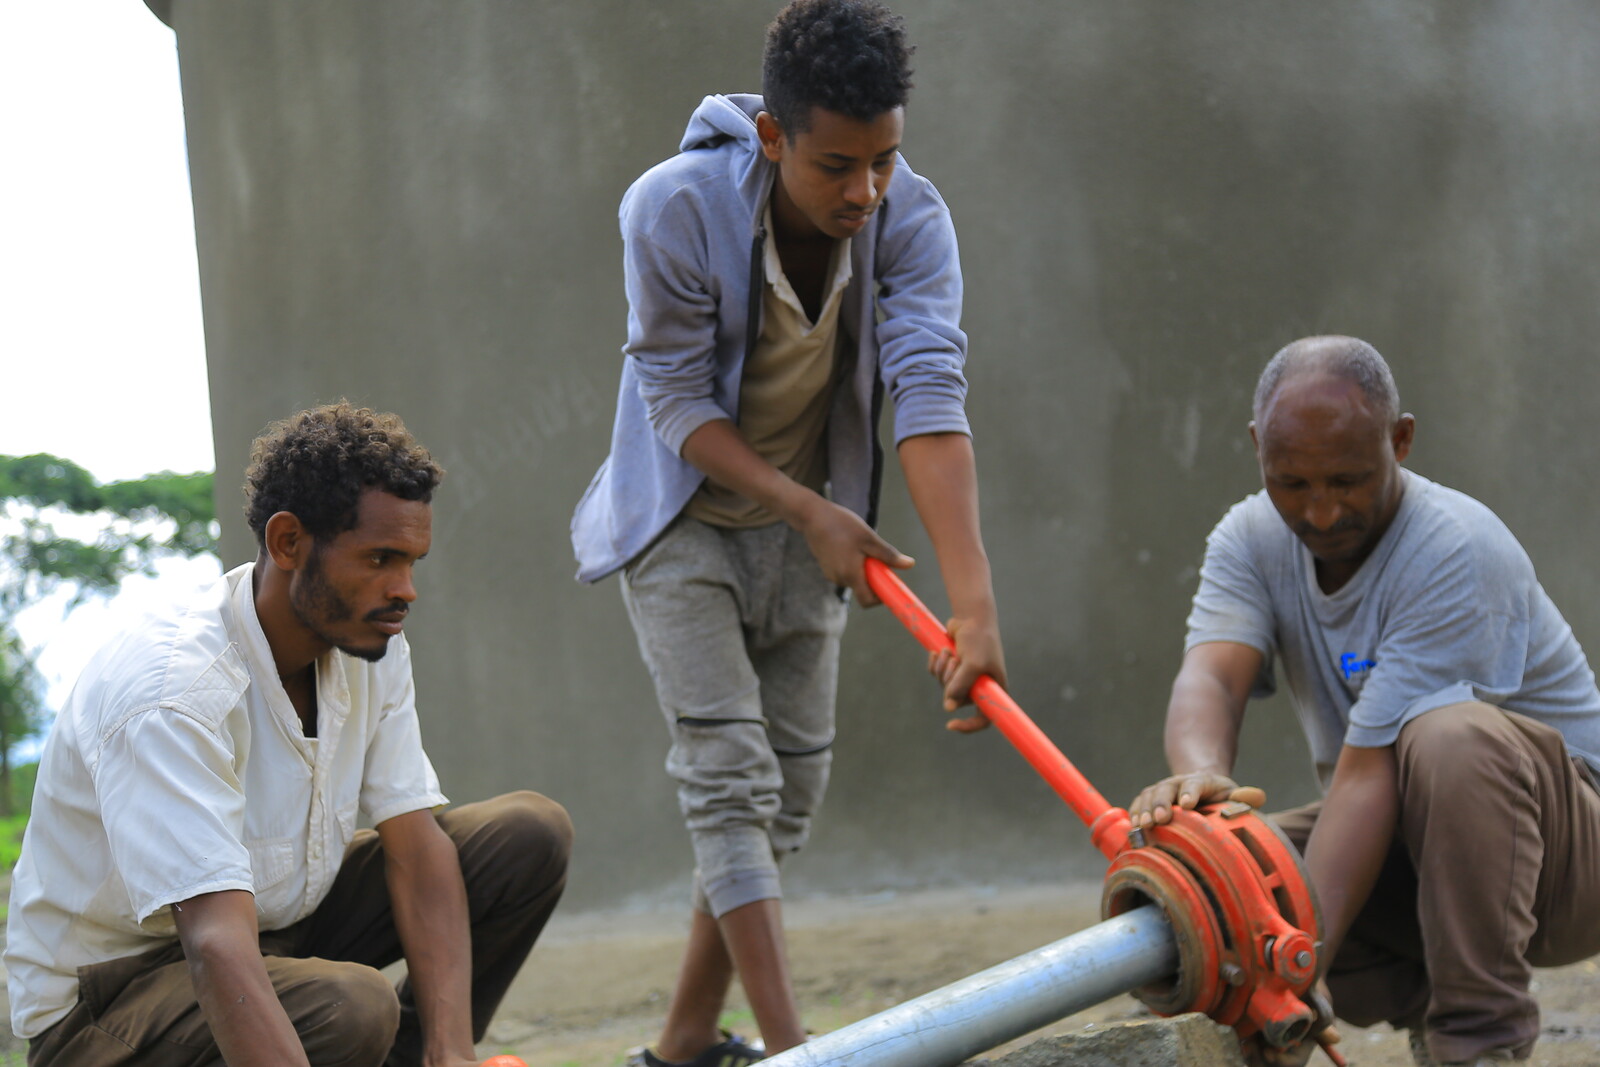 Katastrophenvorsorge in Äthiopien: Männer beim Bau eines Brunnens